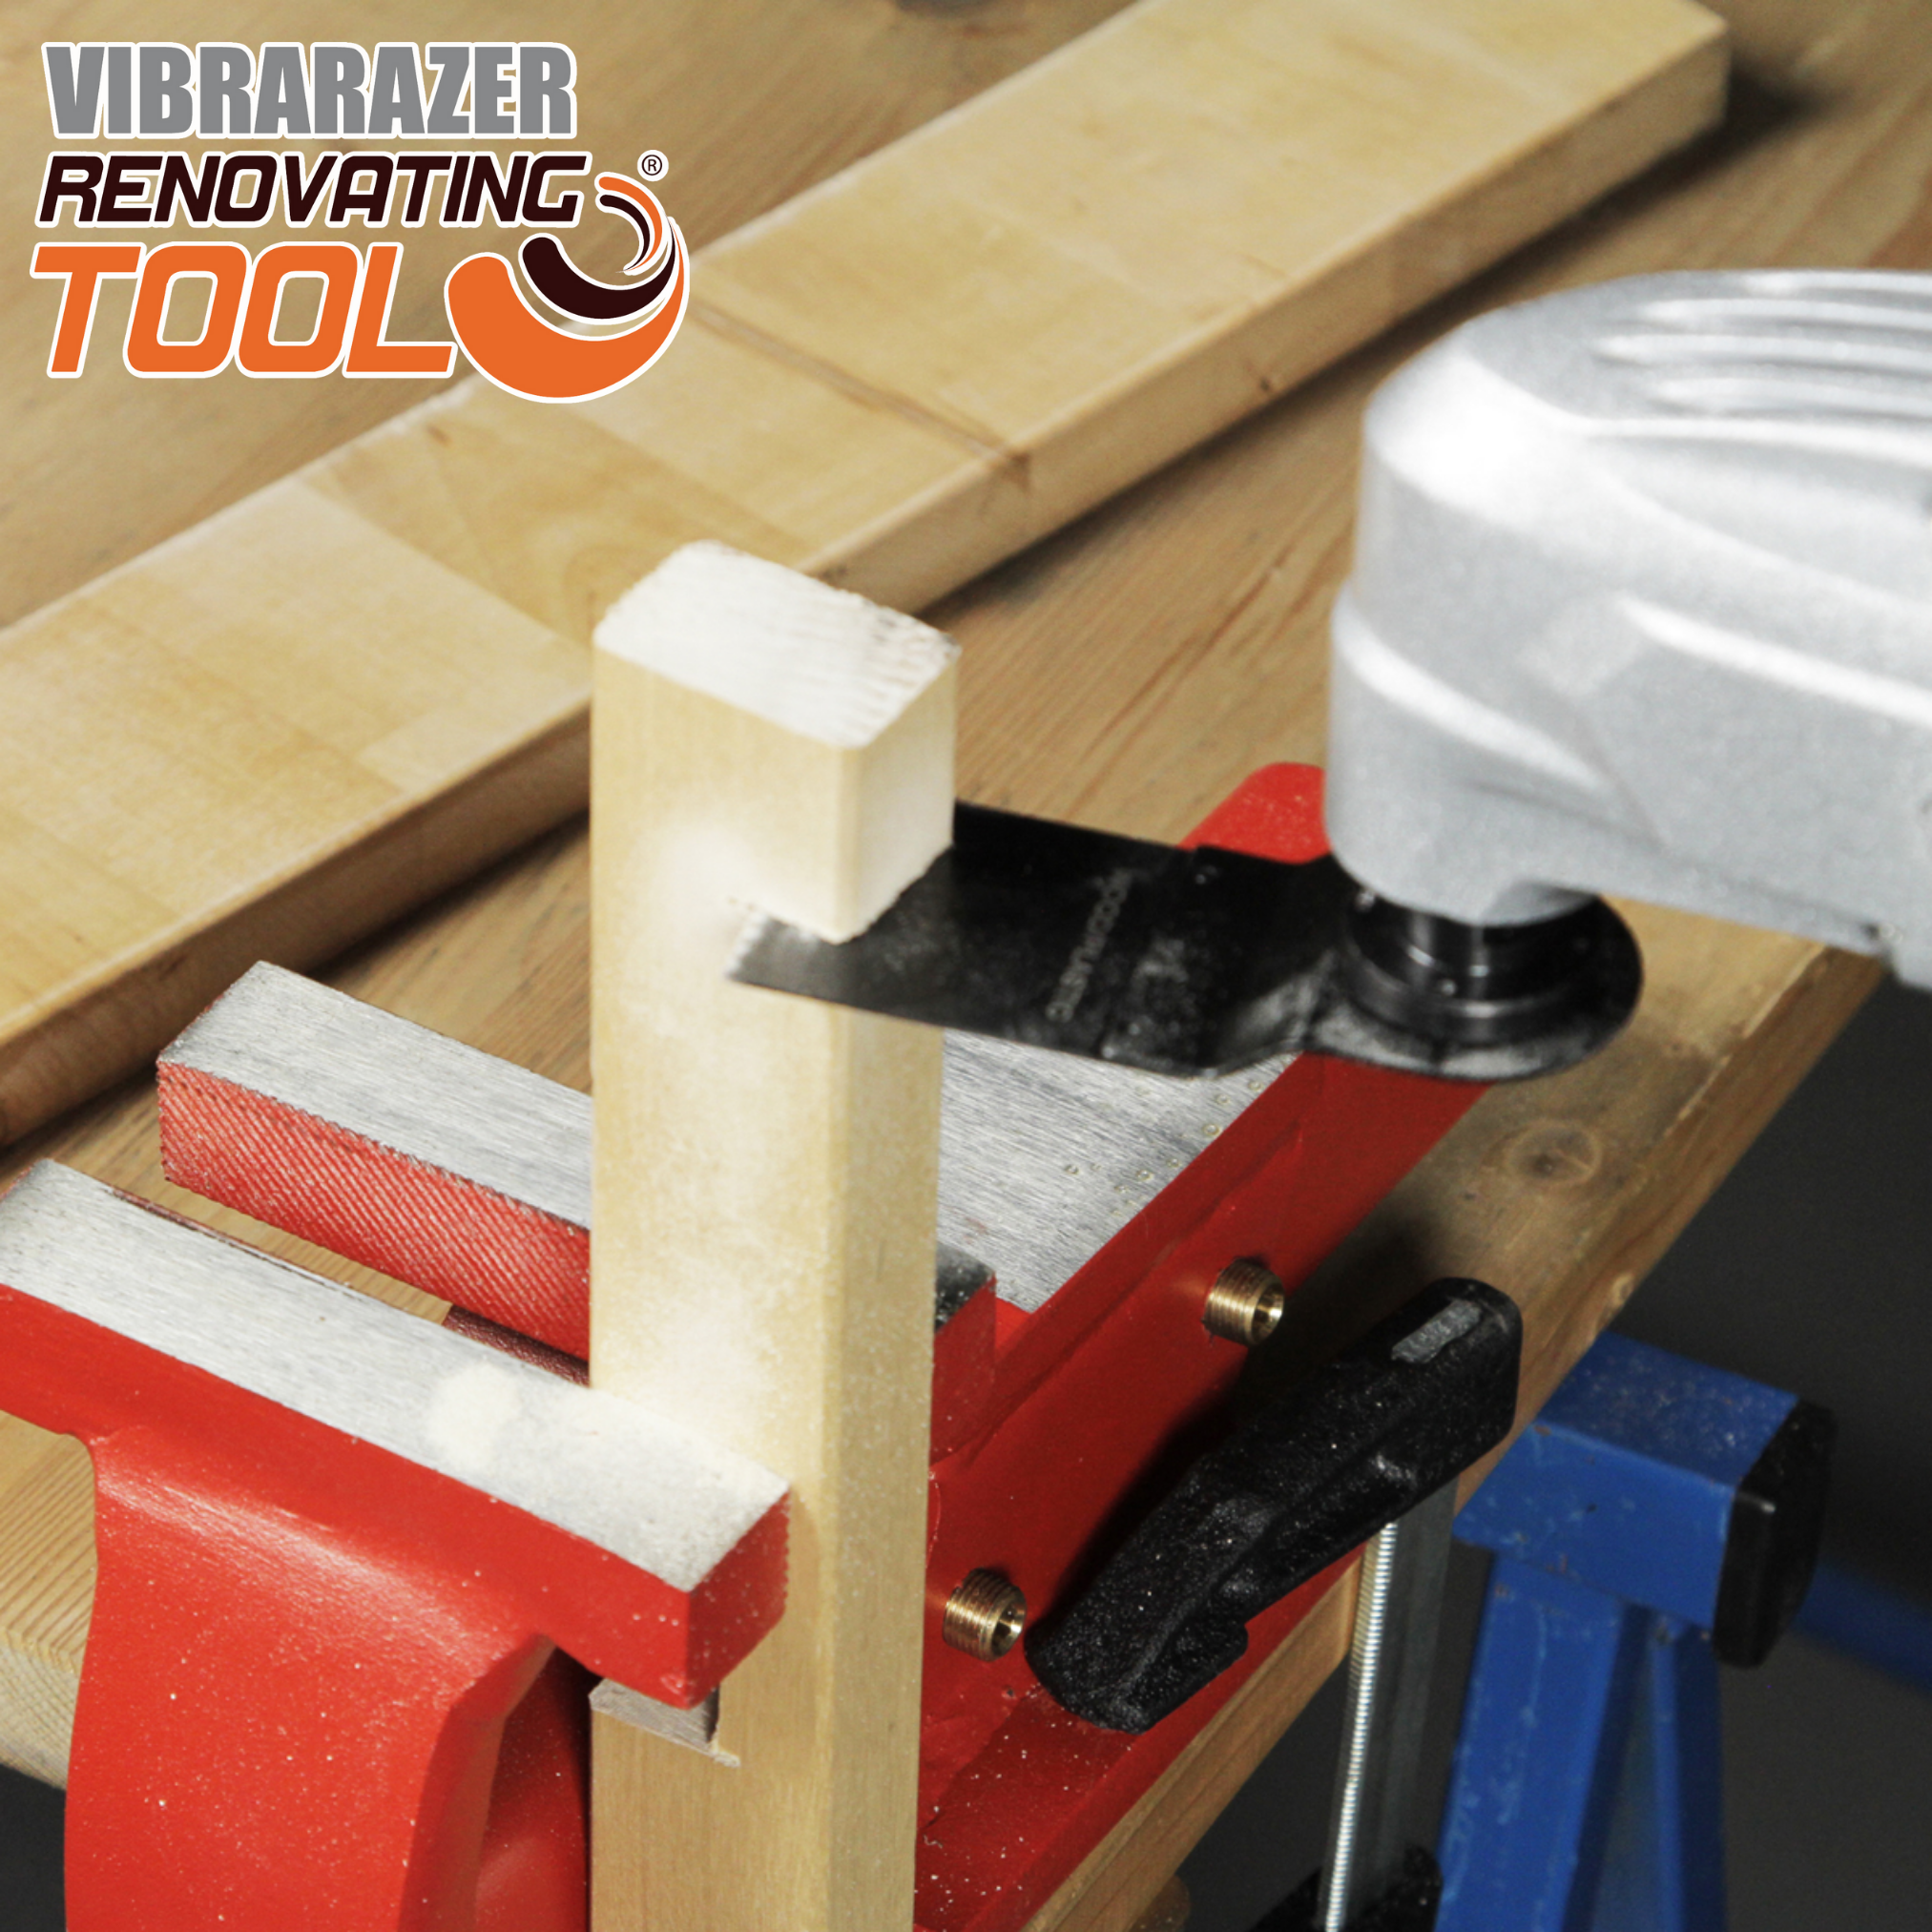 INDUSTEX Vibrarazer Renovating Zubehörteilen Series Multifunktionswerkzeug, Pro Plus Tool® orange - 40 mit